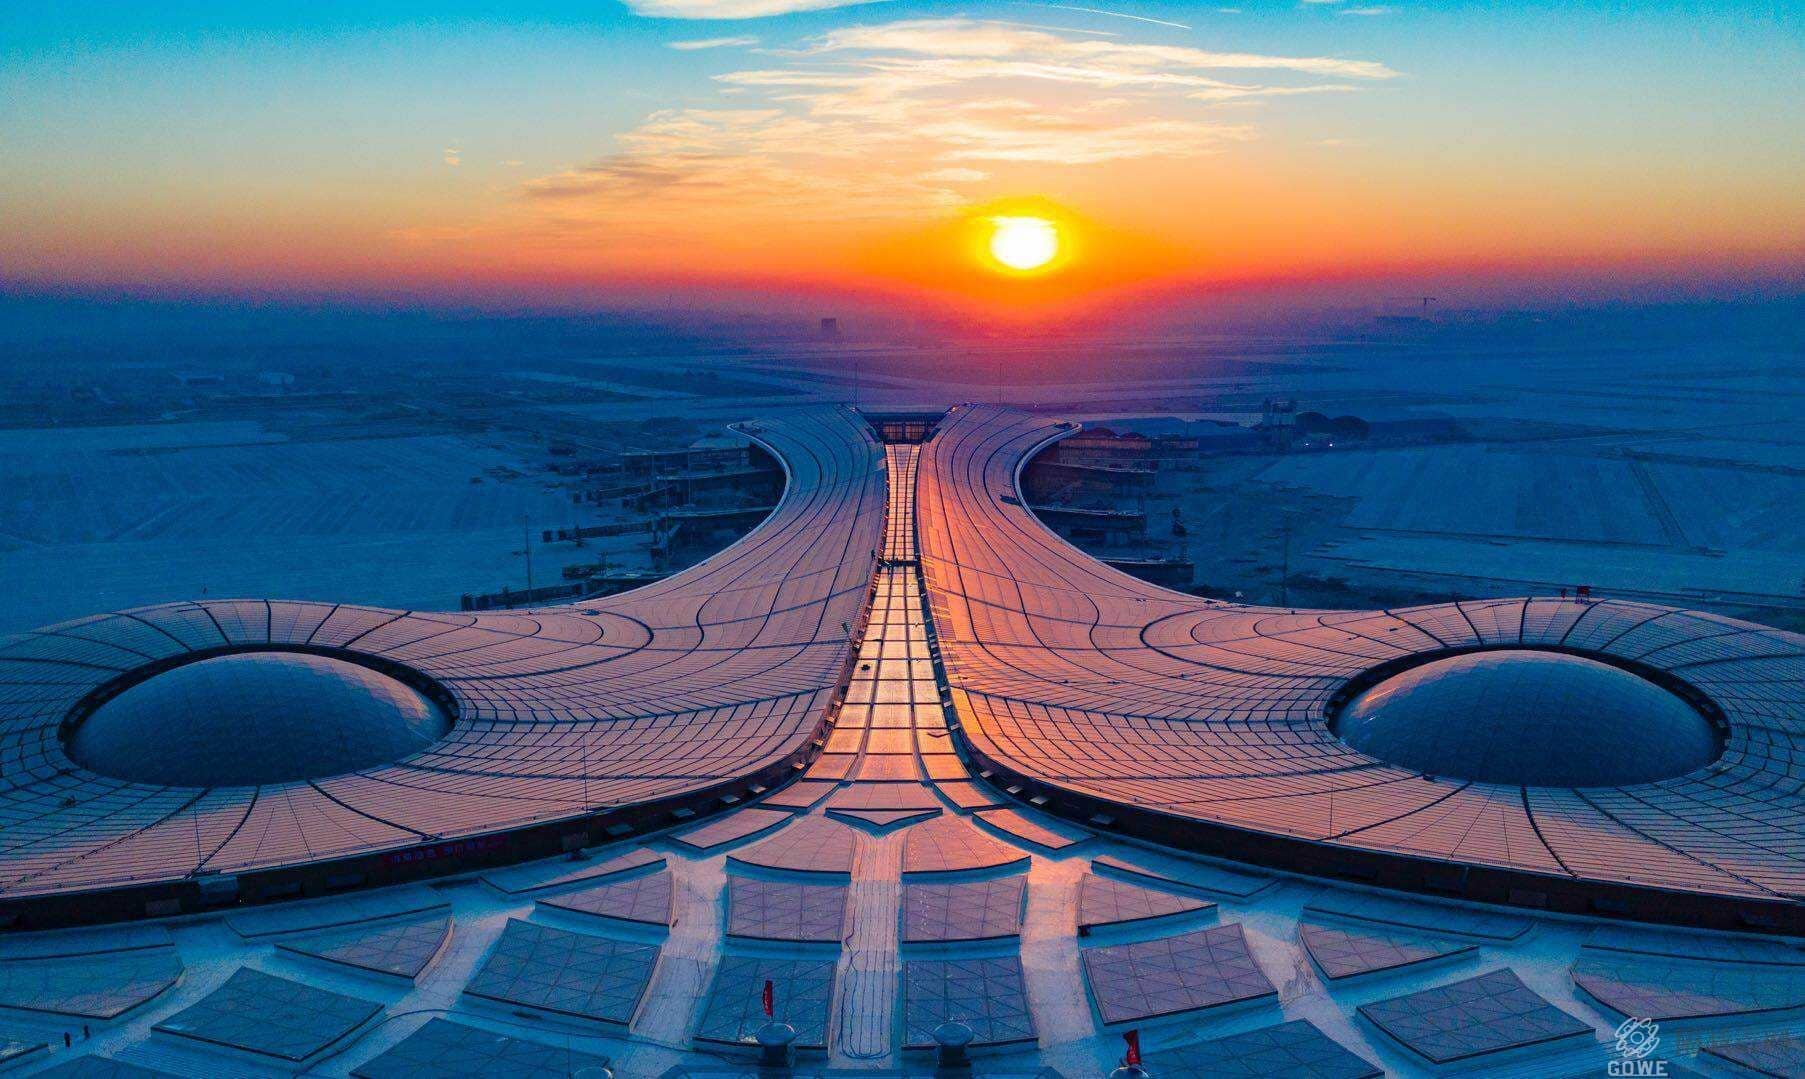 北京大兴新机场主要工程竣工 夜晚候机楼更绚丽